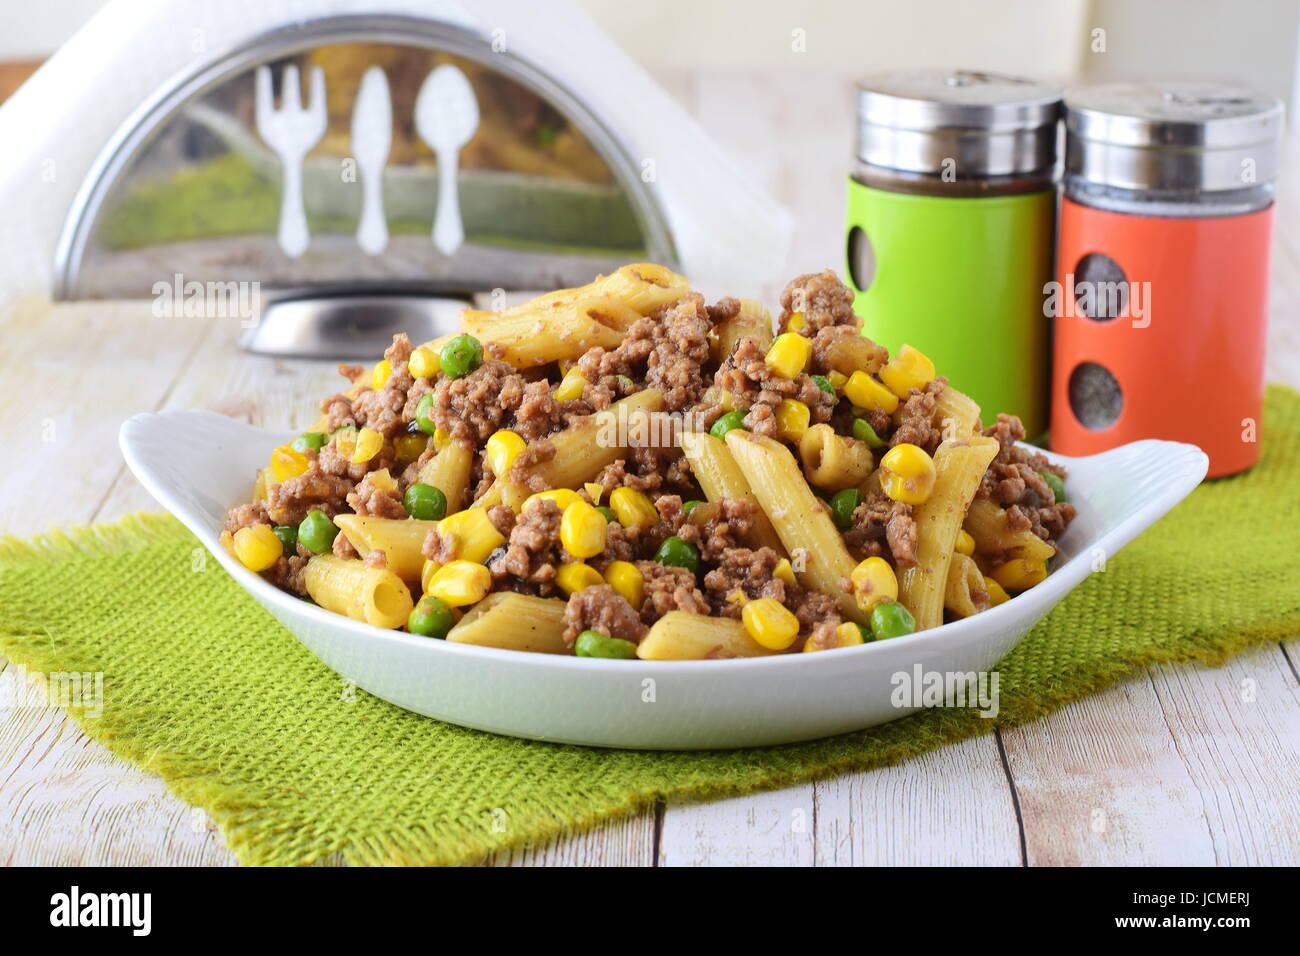 Pasta con carne tritata, i piselli e il mais giallo in una piastra bianca. Cucina casalinga. Mangiare sano concetto Foto Stock